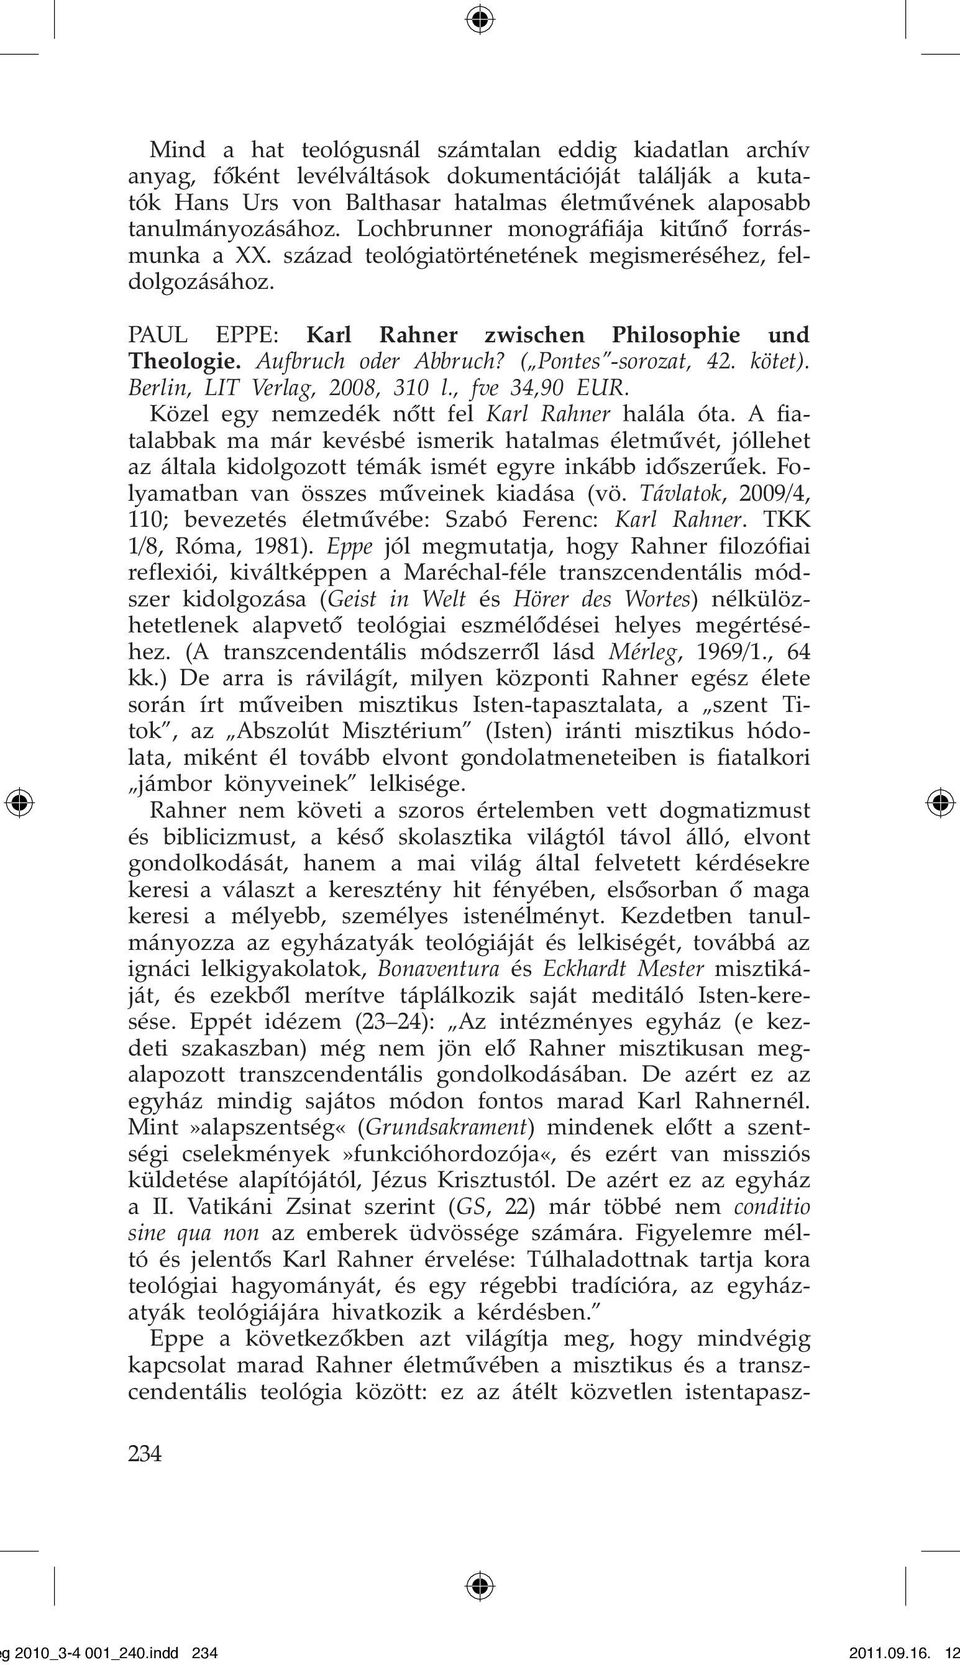 ( Pontes -sorozat, 42. kötet). Berlin, LIT Verlag, 2008, 310 l., fve 34,90 EUR. Közel egy nemzedék nôtt fel Karl Rahner halála óta.